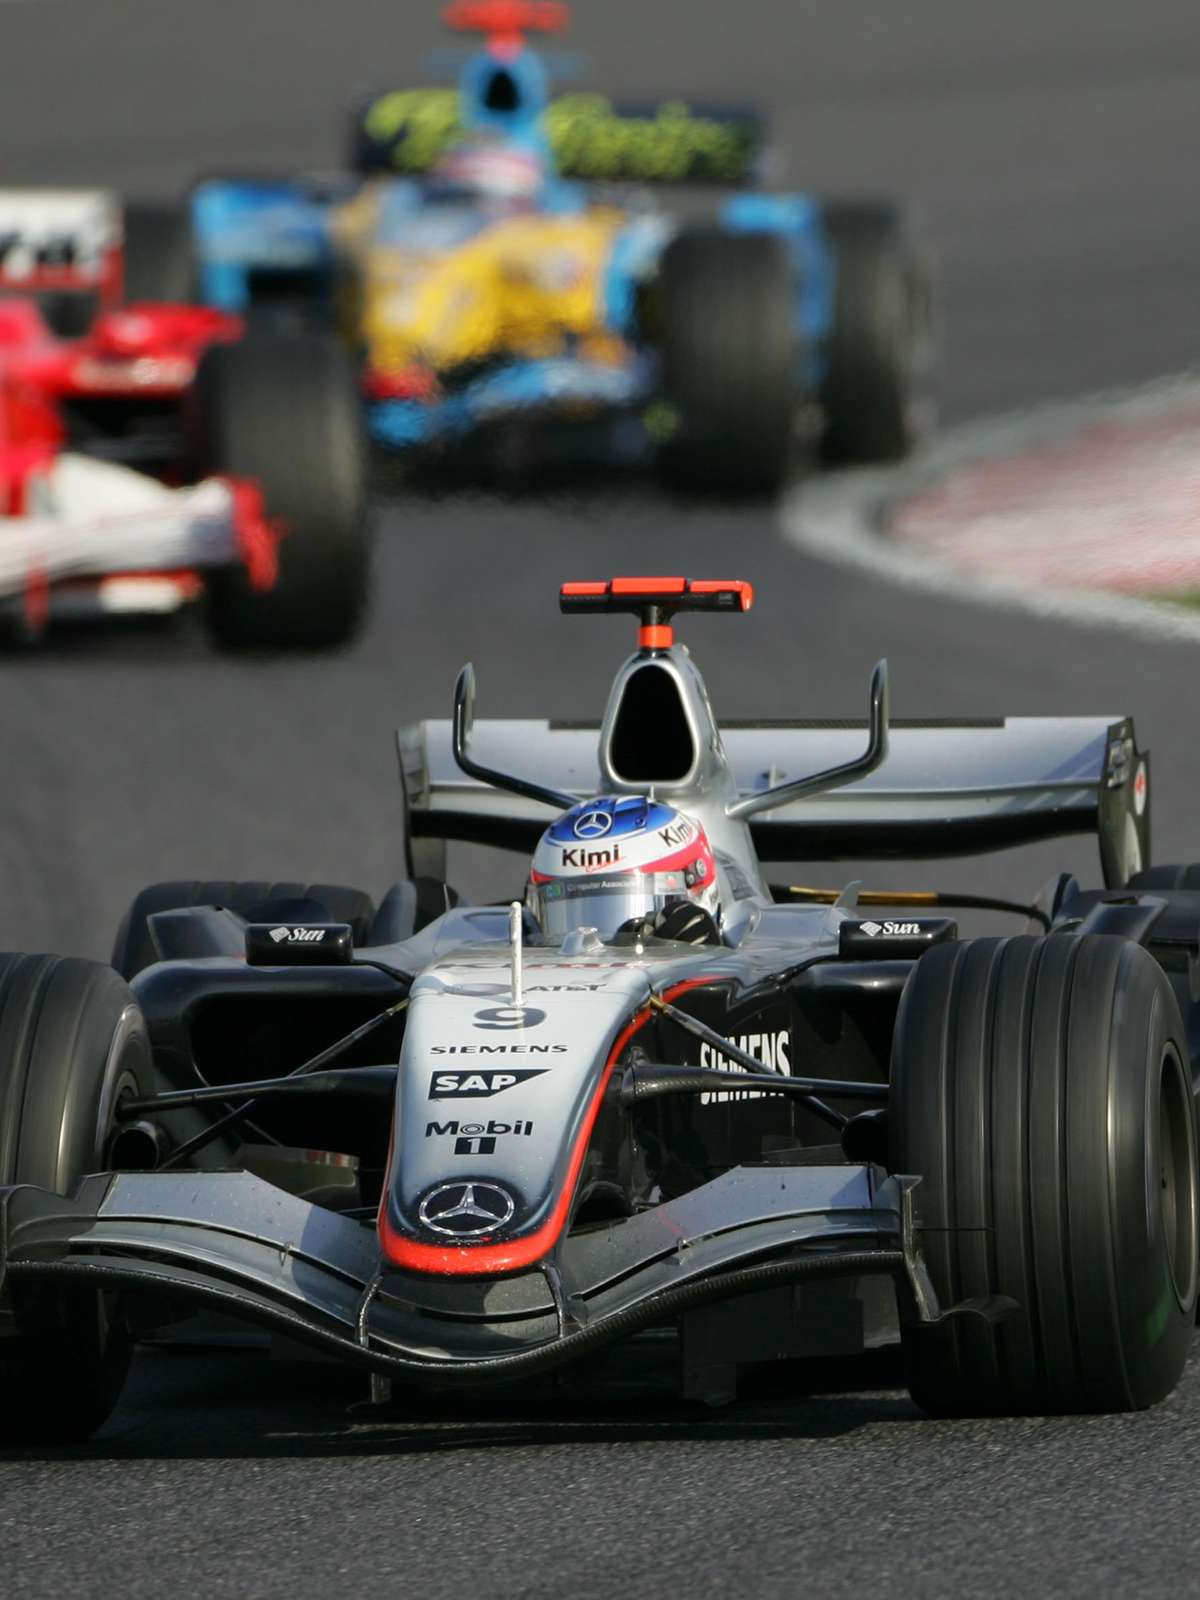 F1: Análise das lições do primeiro dia do GP do Japão